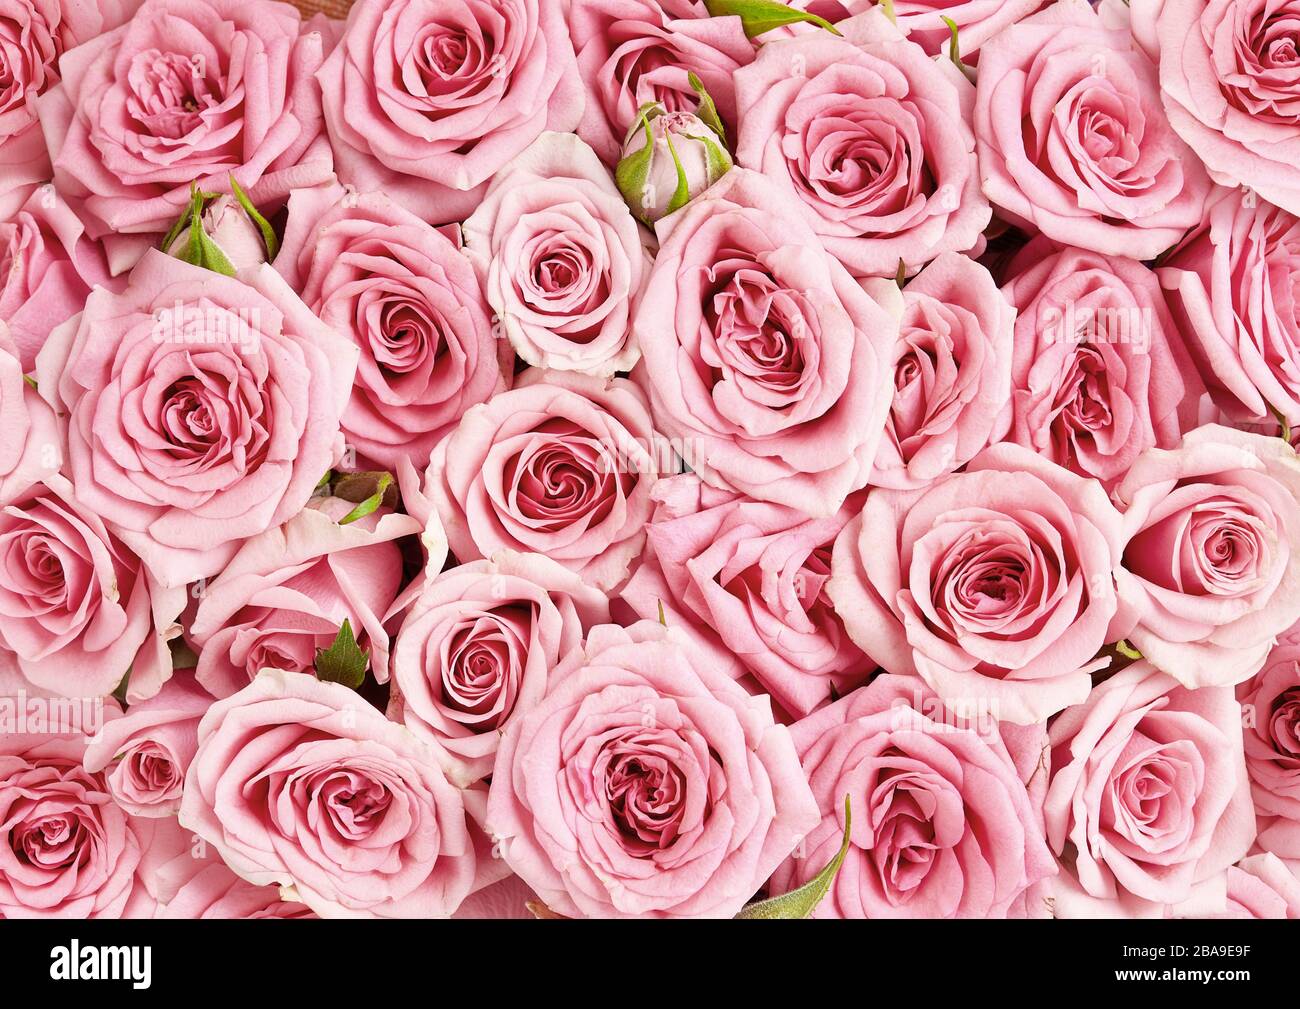 Image de fond des roses roses roses. Vue sur les fleurs roses Photo Stock -  Alamy